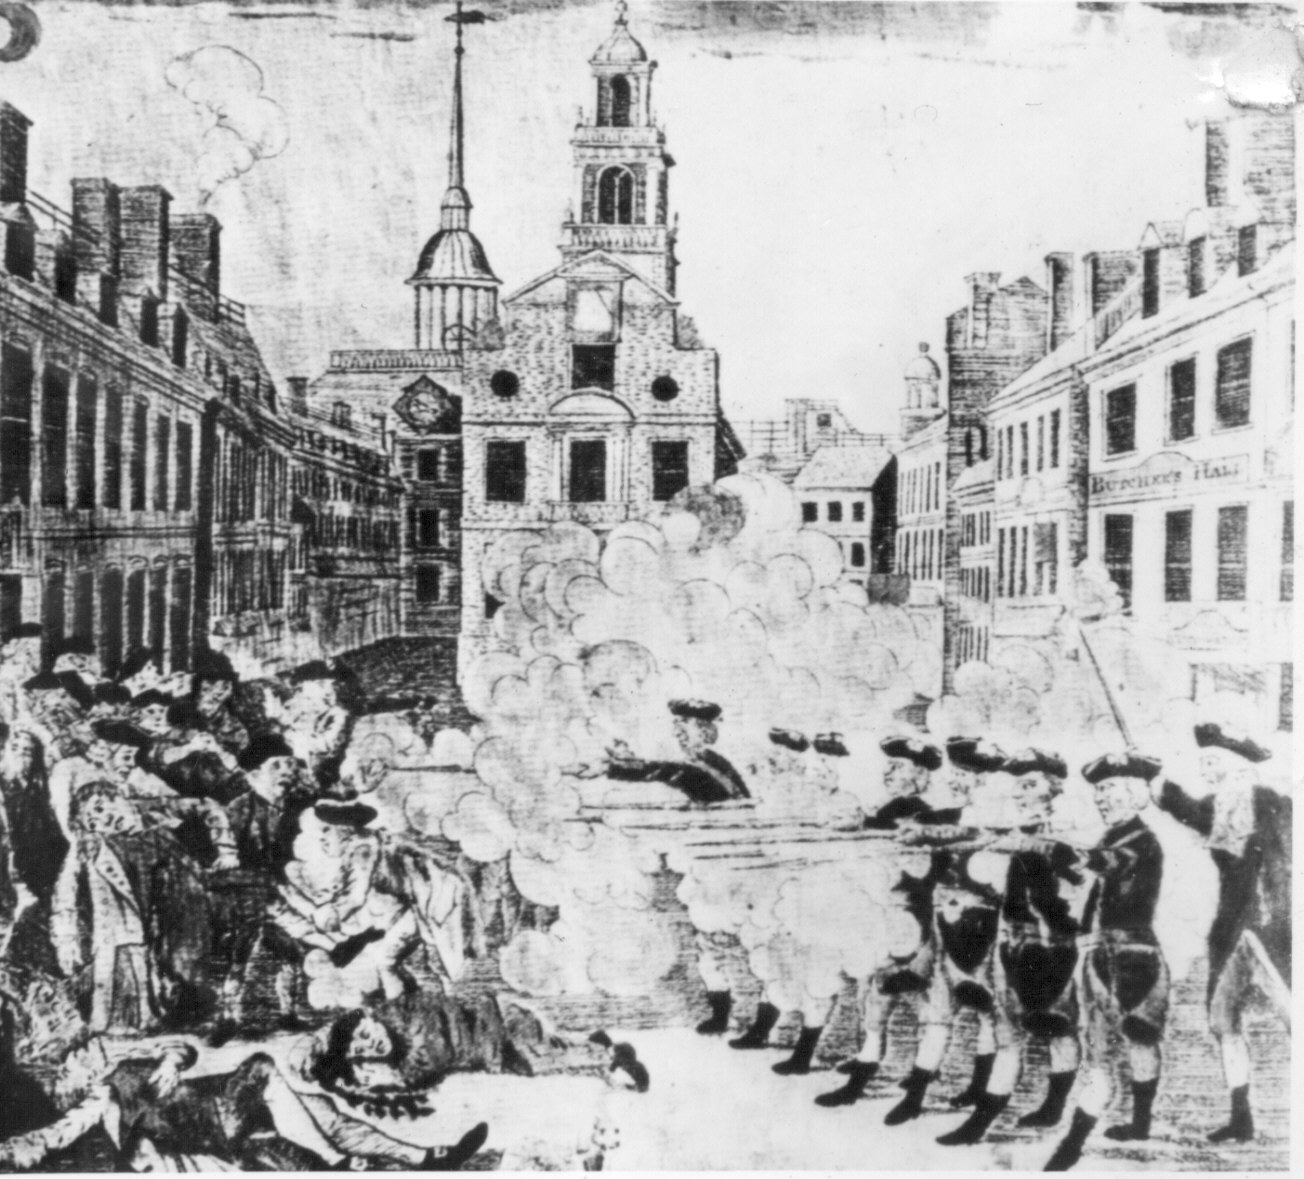 On The Boston Massacre & Benefit of Clergy